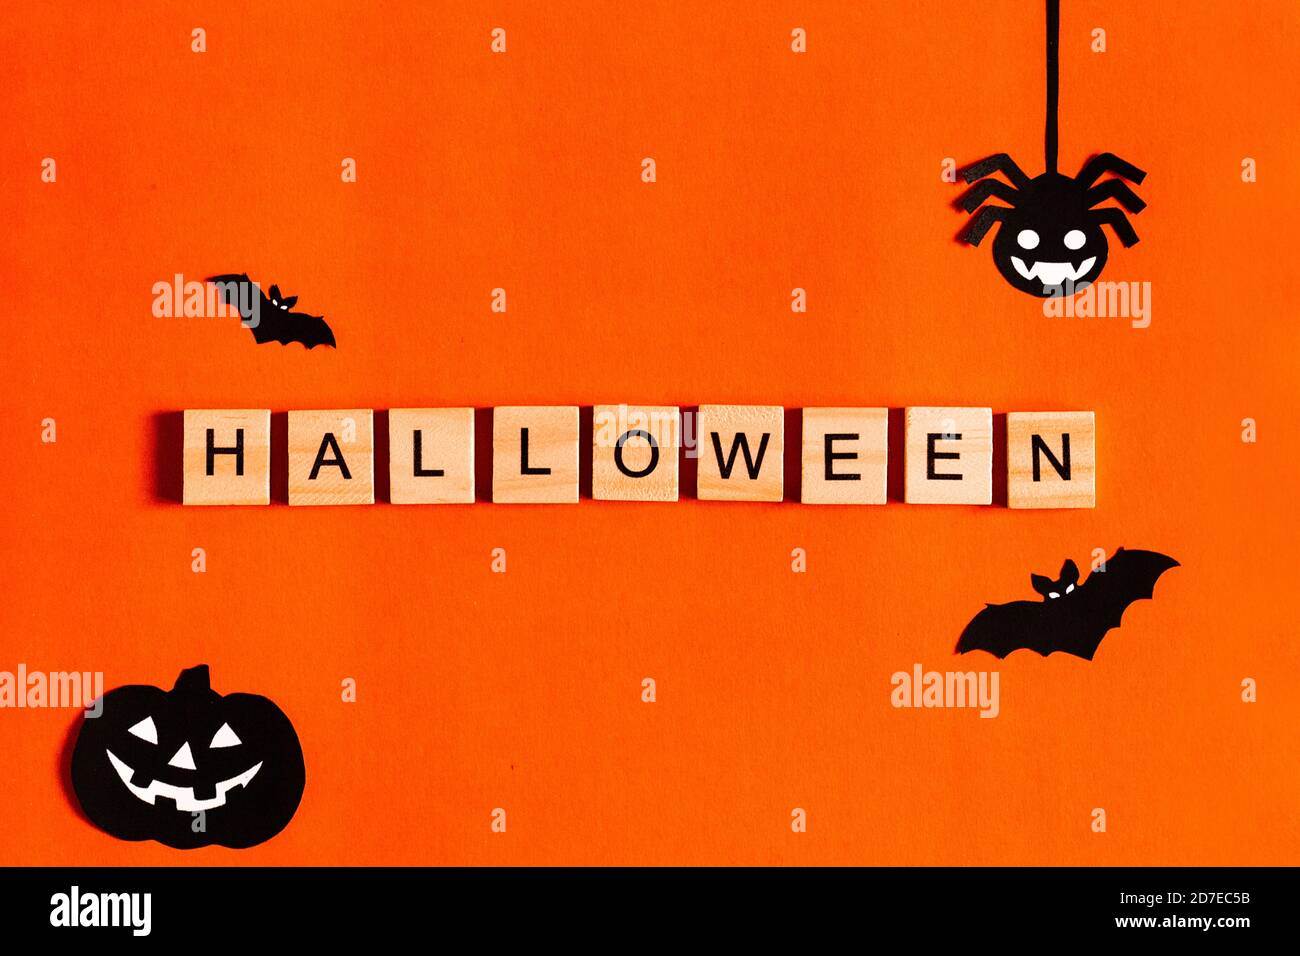 Scritta Halloween su sfondo arancione con silhouette di carta nera, pipistrelli, zucca, ragno. Il concetto di Halloween. La vista dall'alto Foto Stock